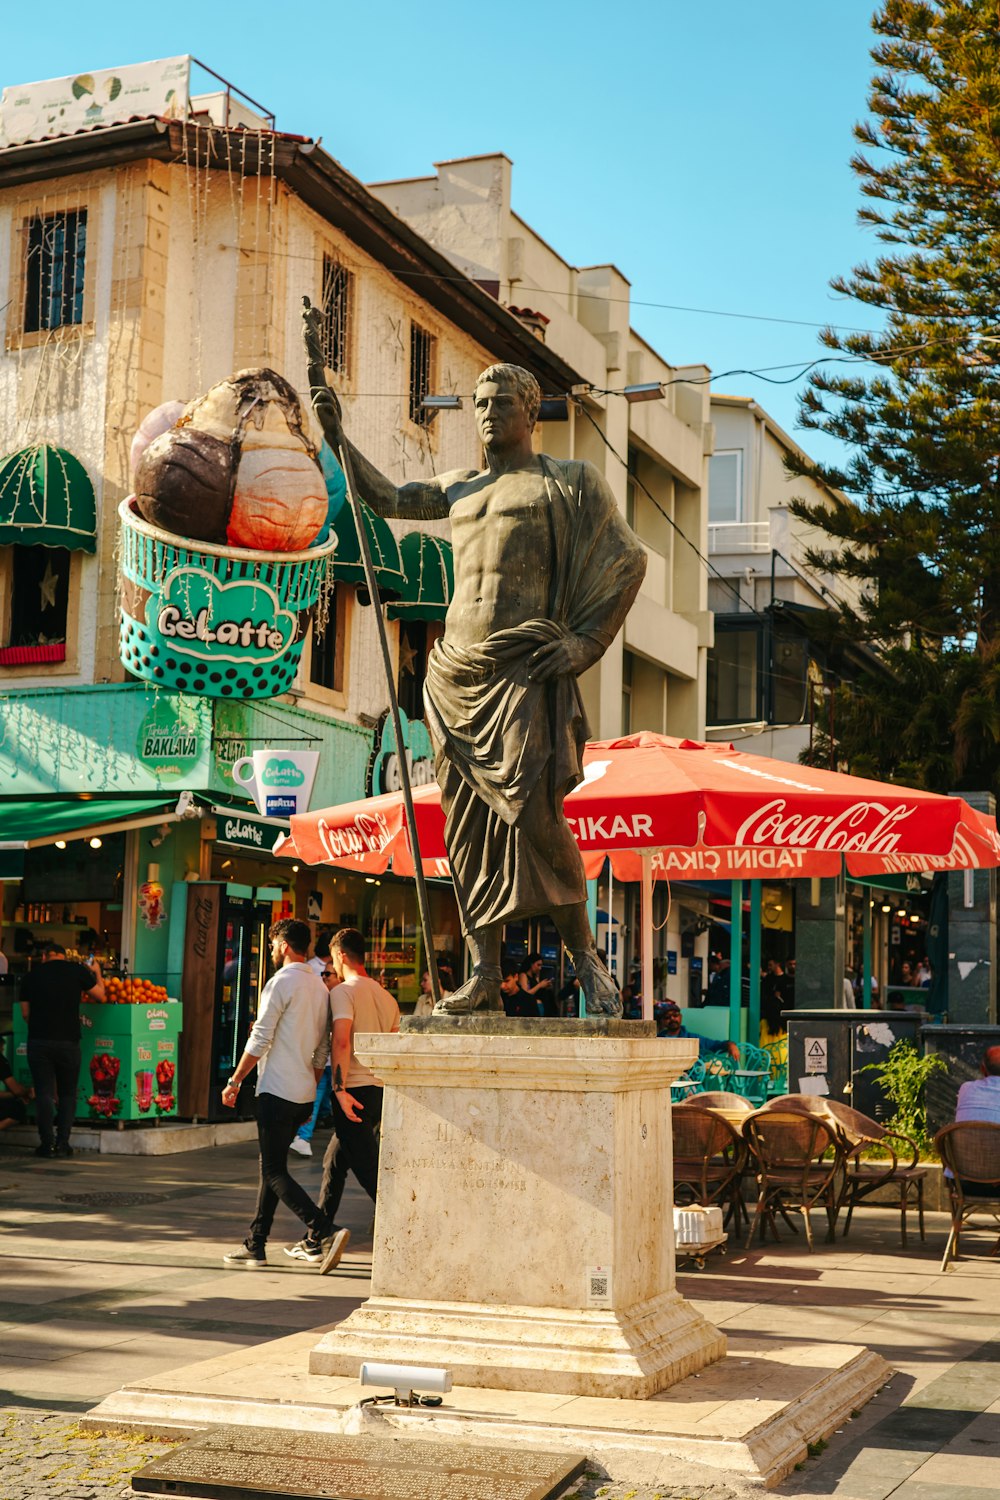 a statue of a man holding an umbrella